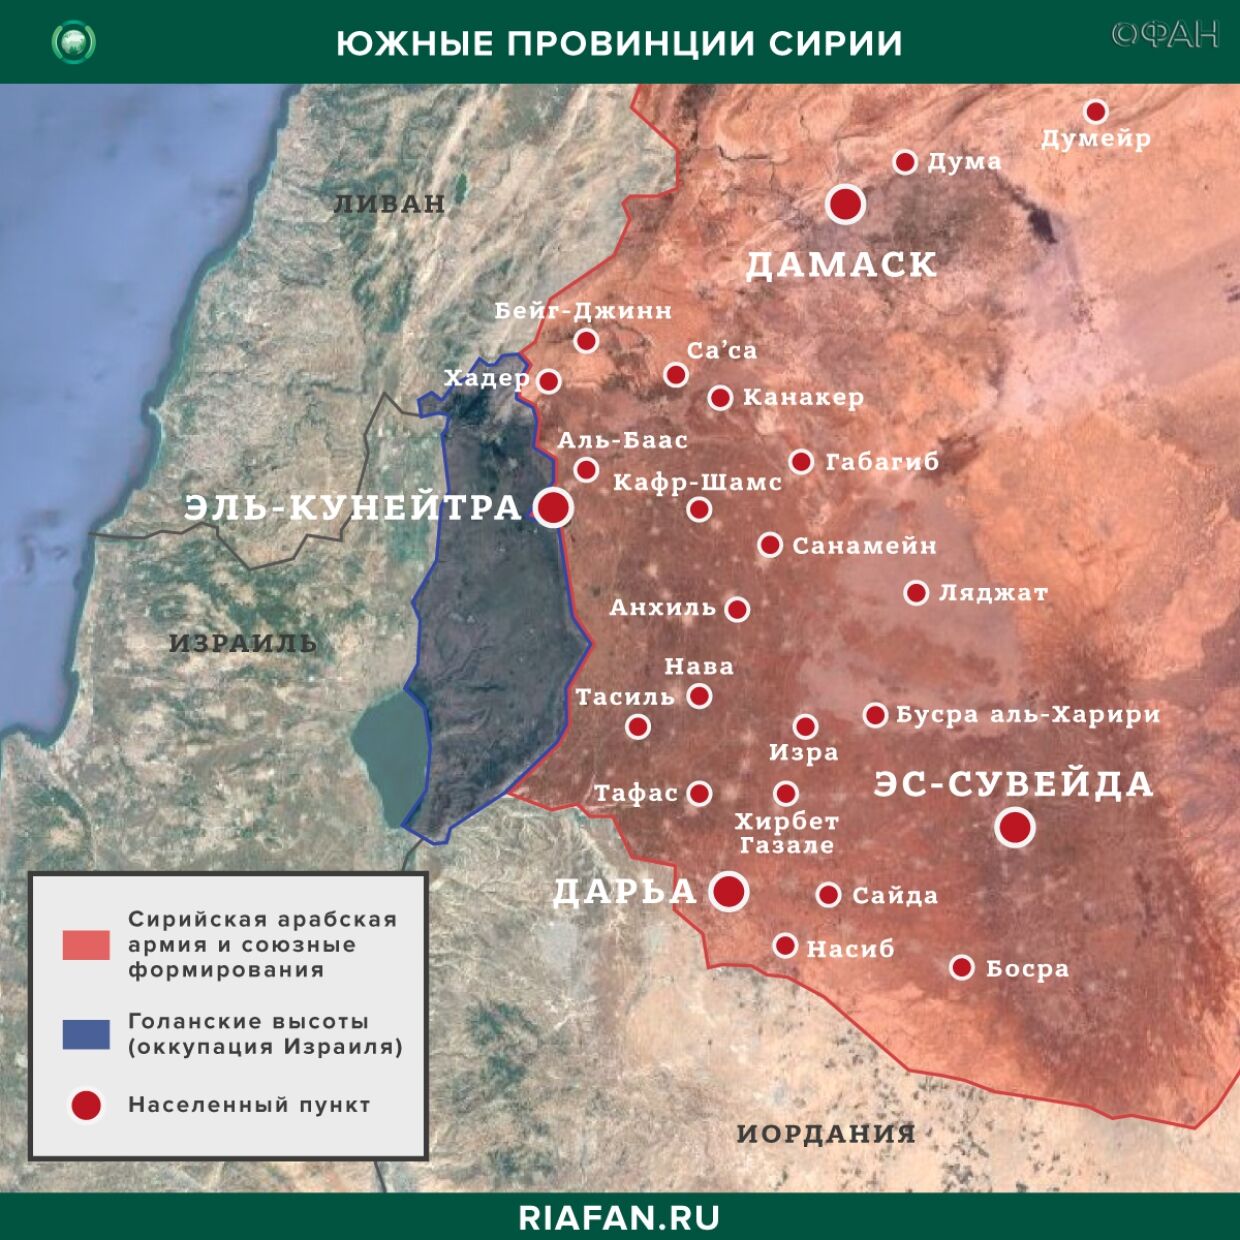 Nouvelles de Syrie 21 Peut 22.30: авиаудар ВВС международной коалиции в Дейр-эз-Зоре, провокации ХТШ в Хаме